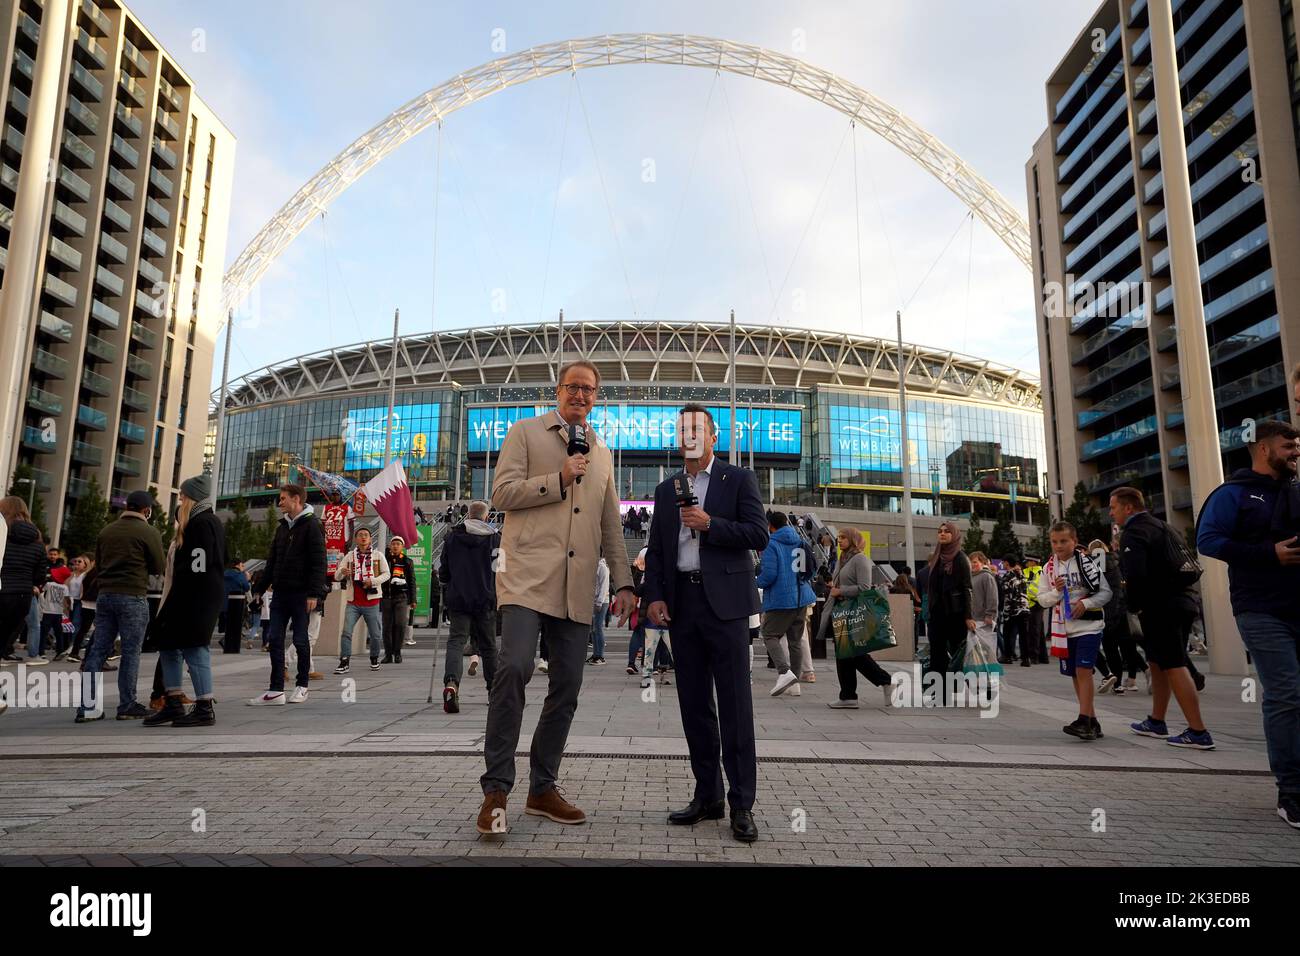 El ex futbolista alemán Lothar Matthaus (derecha) trabajaba para la televisión fuera del suelo antes del partido de la Liga de las Naciones de la UEFA en el estadio de Wembley, Londres. Fecha de la foto: Lunes 26 de septiembre de 2022. Foto de stock